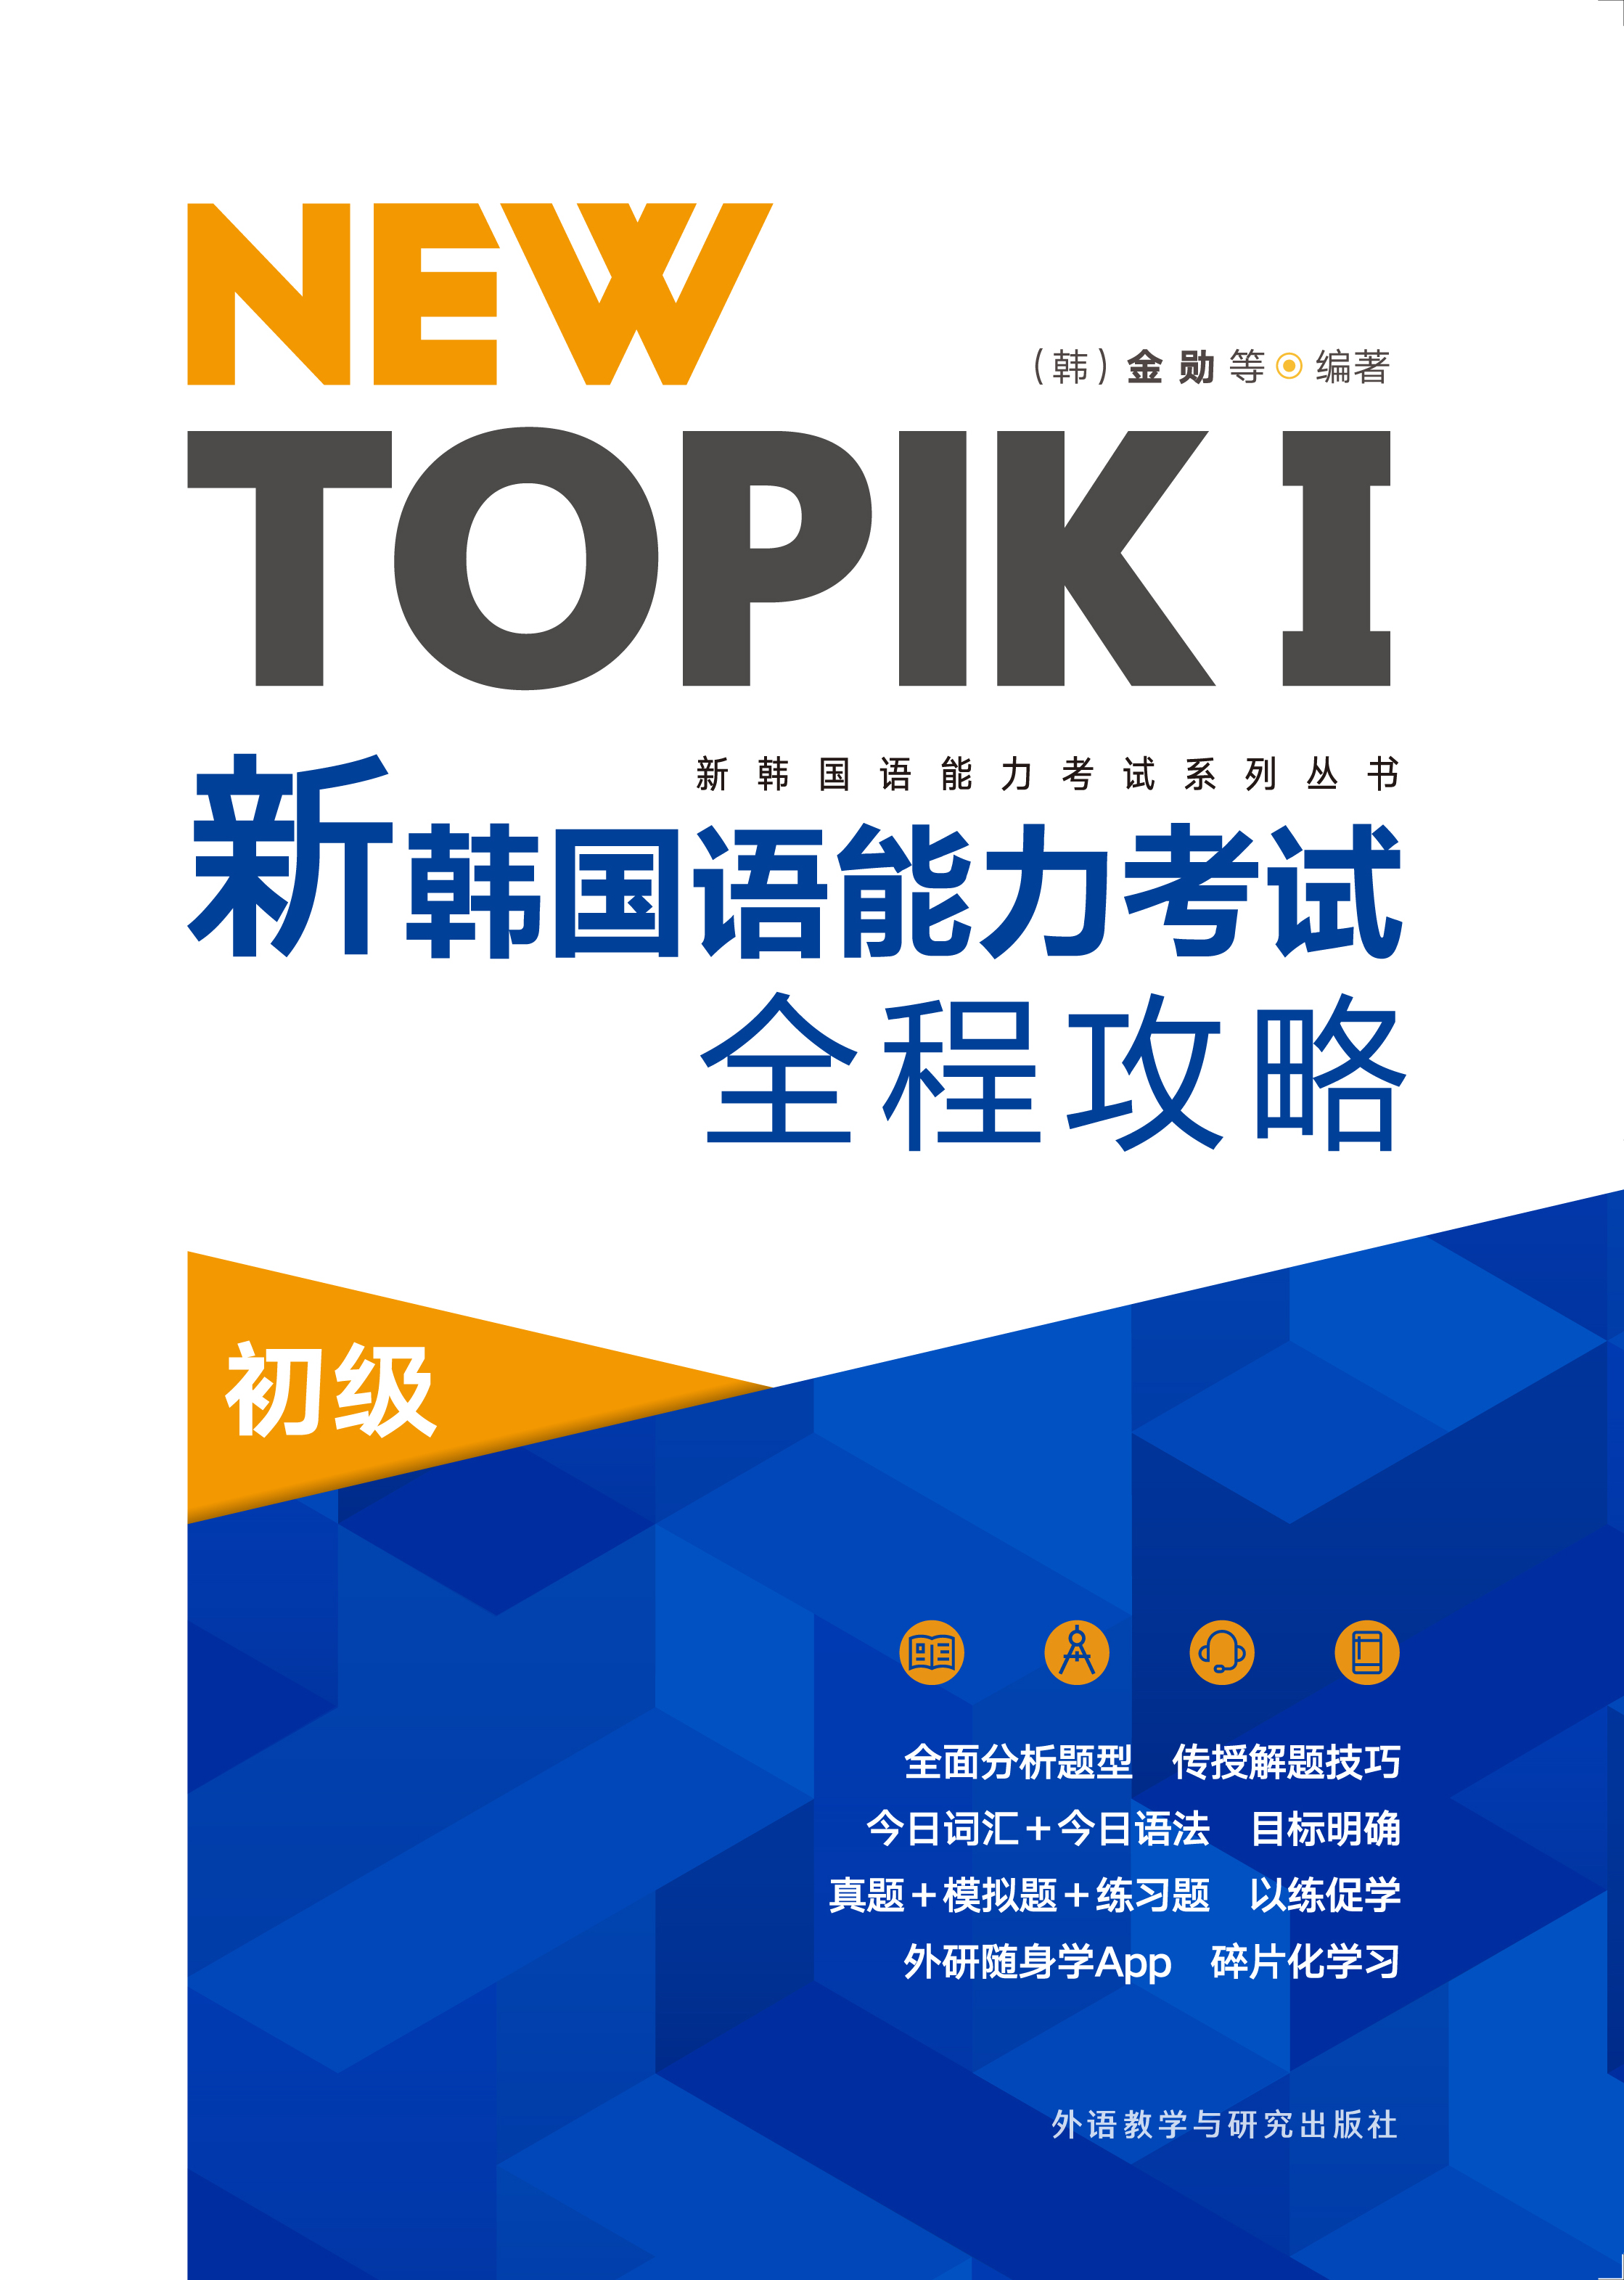 NEW TOPIKⅠ新韩国语能力考试全程攻略初级